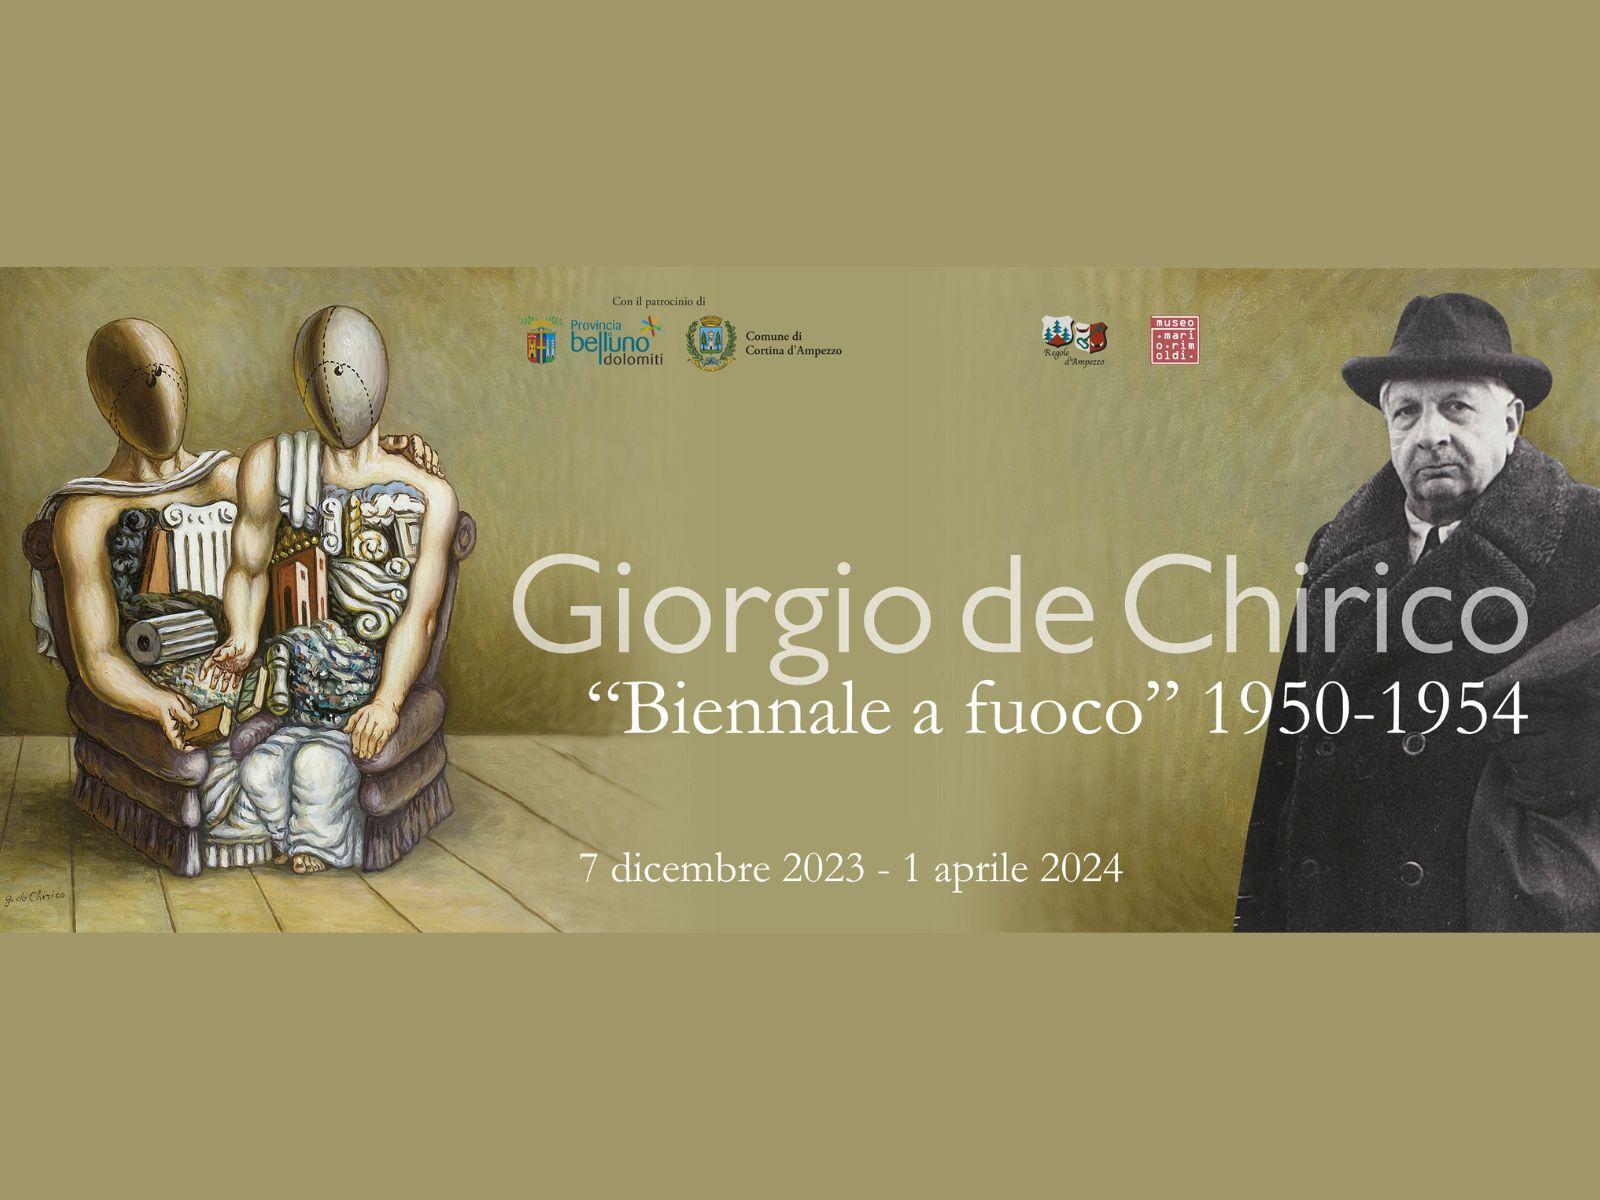 Giorgio de Chirico. "Biennale a fuoco" 1950-1954